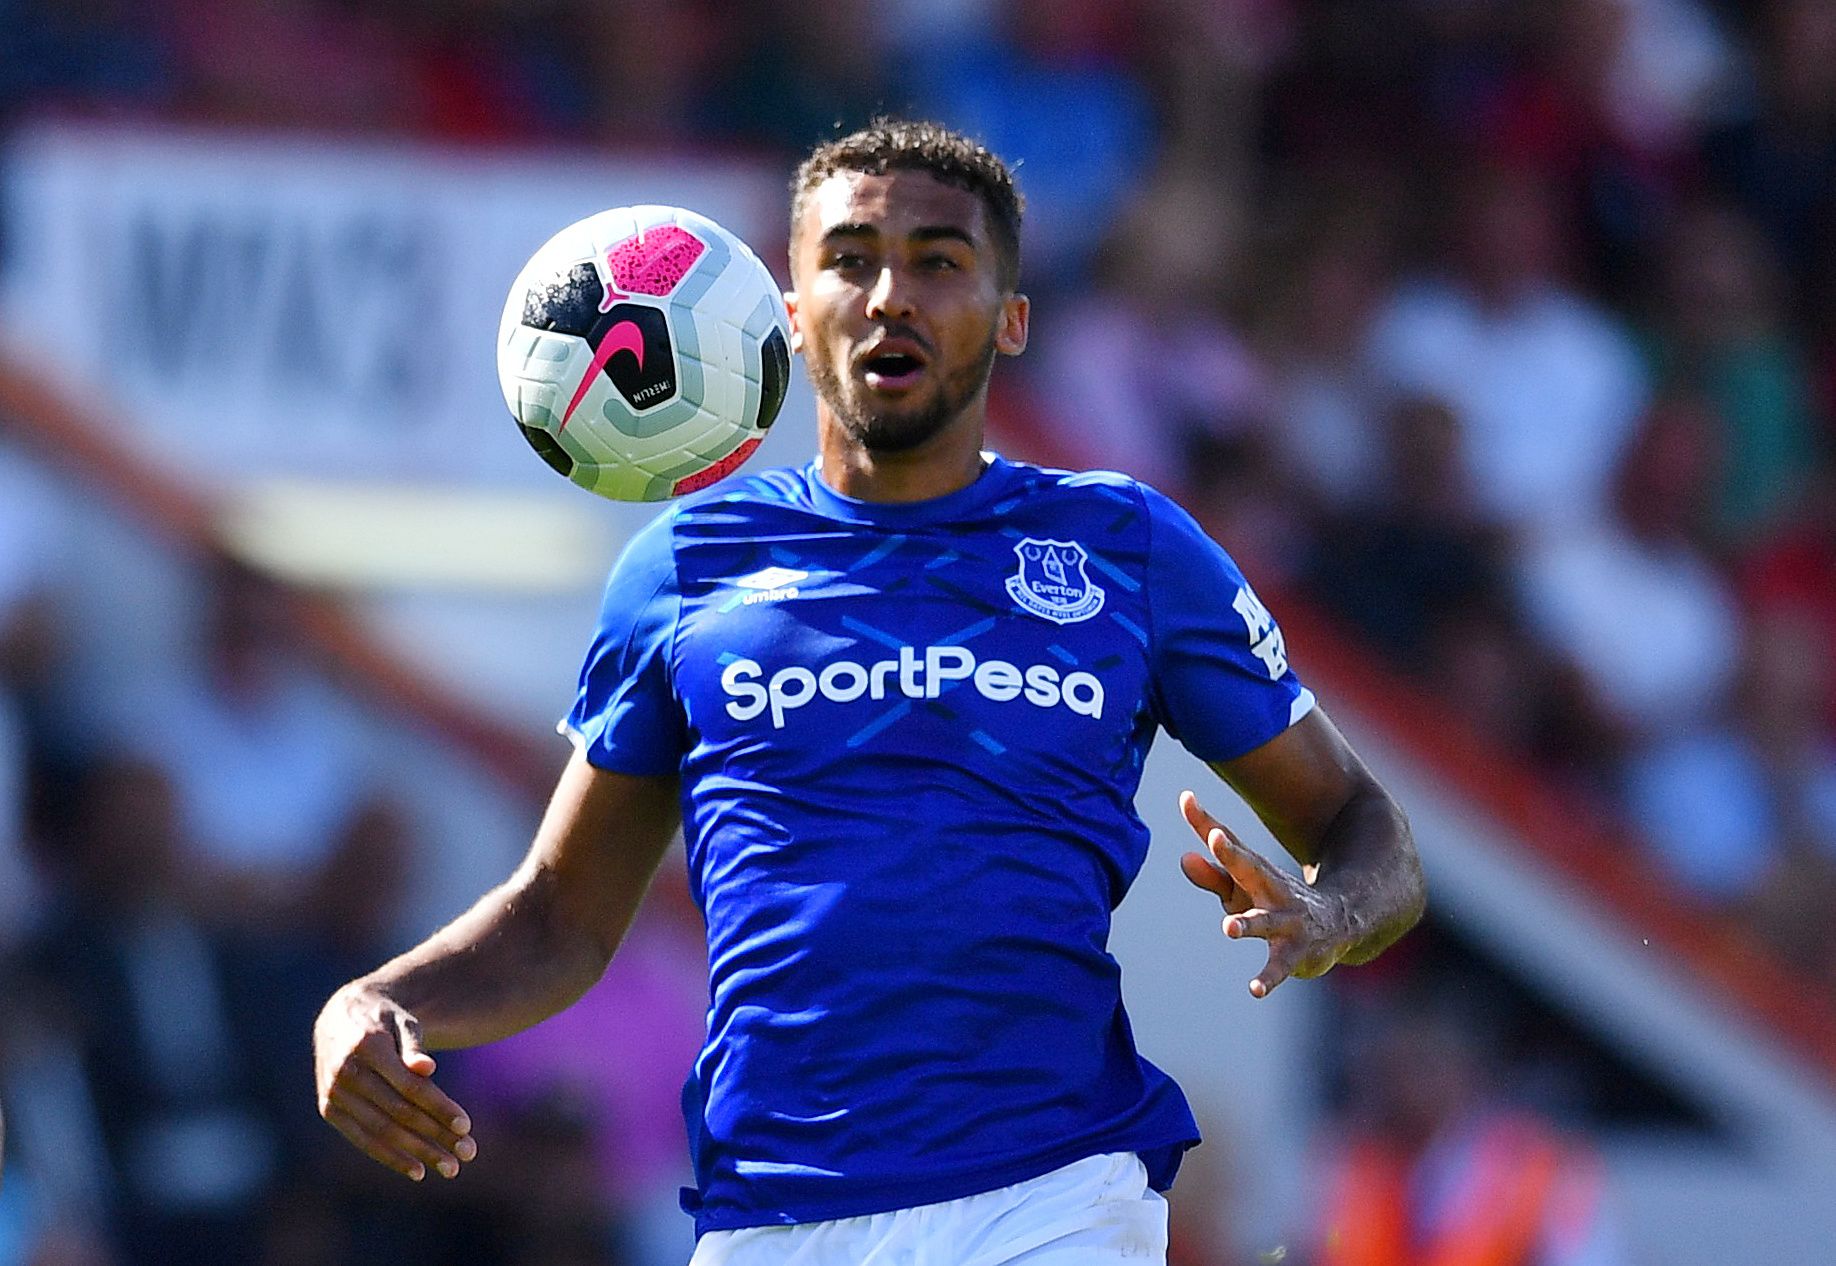 Everton attacker Dominic Calvert-Lewin